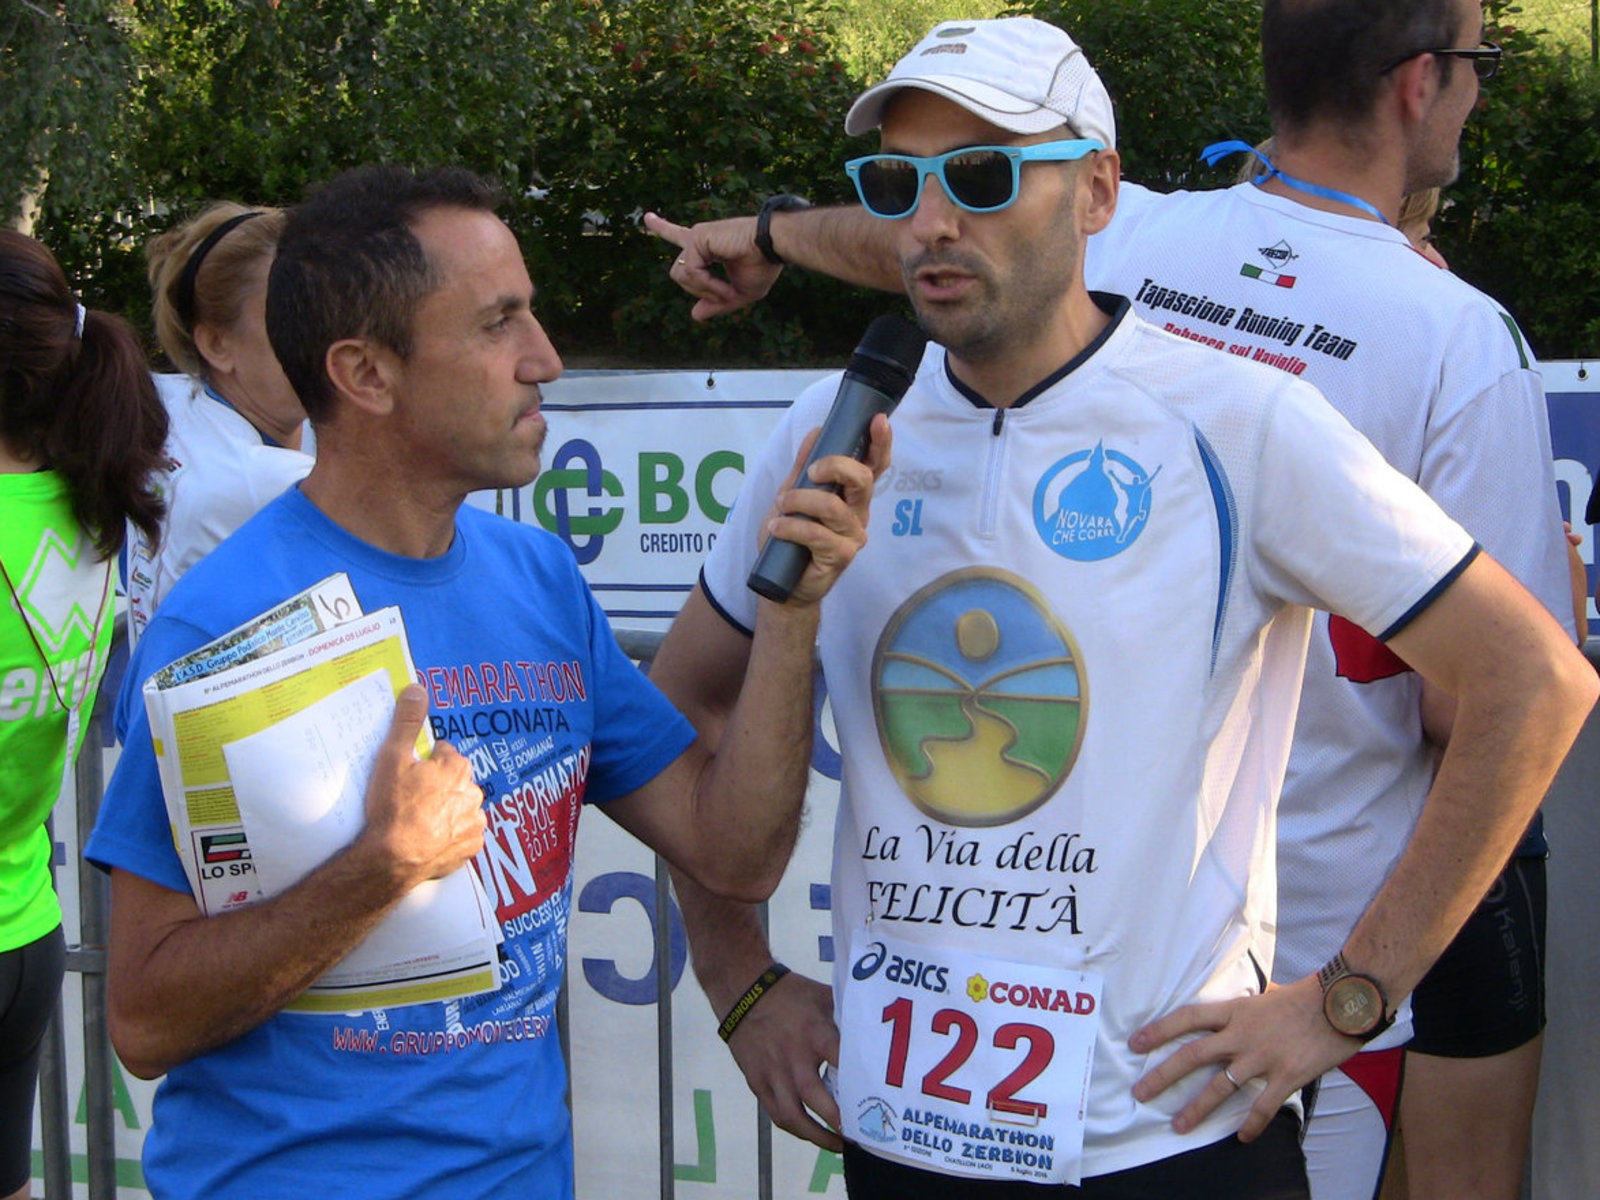 Ultramaratonec Simone Leo, který je spoluzakladatelem iniciativy, poskytl rozhovor na závodě, kde byl sponzorován nadací The Way to Happiness Foundation 